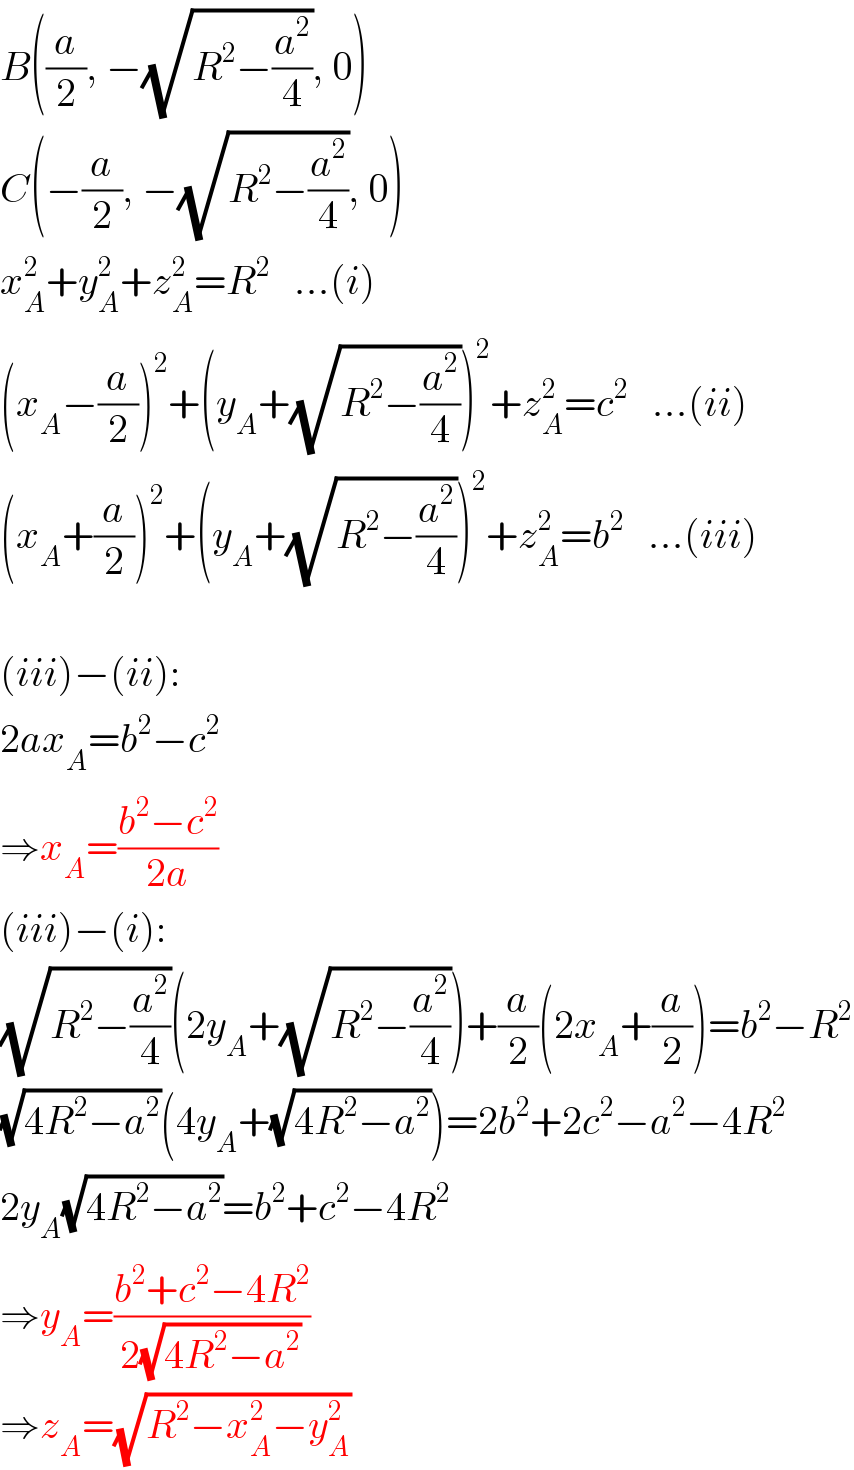 B((a/2), −(√(R^2 −(a^2 /4))), 0)  C(−(a/2), −(√(R^2 −(a^2 /4))), 0)  x_A ^2 +y_A ^2 +z_A ^2 =R^2    ...(i)  (x_A −(a/2))^2 +(y_A +(√(R^2 −(a^2 /4))))^2 +z_A ^2 =c^2    ...(ii)  (x_A +(a/2))^2 +(y_A +(√(R^2 −(a^2 /4))))^2 +z_A ^2 =b^2    ...(iii)    (iii)−(ii):  2ax_A =b^2 −c^2   ⇒x_A =((b^2 −c^2 )/(2a))  (iii)−(i):  (√(R^2 −(a^2 /4)))(2y_A +(√(R^2 −(a^2 /4))))+(a/2)(2x_A +(a/2))=b^2 −R^2   (√(4R^2 −a^2 ))(4y_A +(√(4R^2 −a^2 )))=2b^2 +2c^2 −a^2 −4R^2   2y_A (√(4R^2 −a^2 ))=b^2 +c^2 −4R^2   ⇒y_A =((b^2 +c^2 −4R^2 )/(2(√(4R^2 −a^2 ))))  ⇒z_A =(√(R^2 −x_A ^2 −y_A ^2 ))  